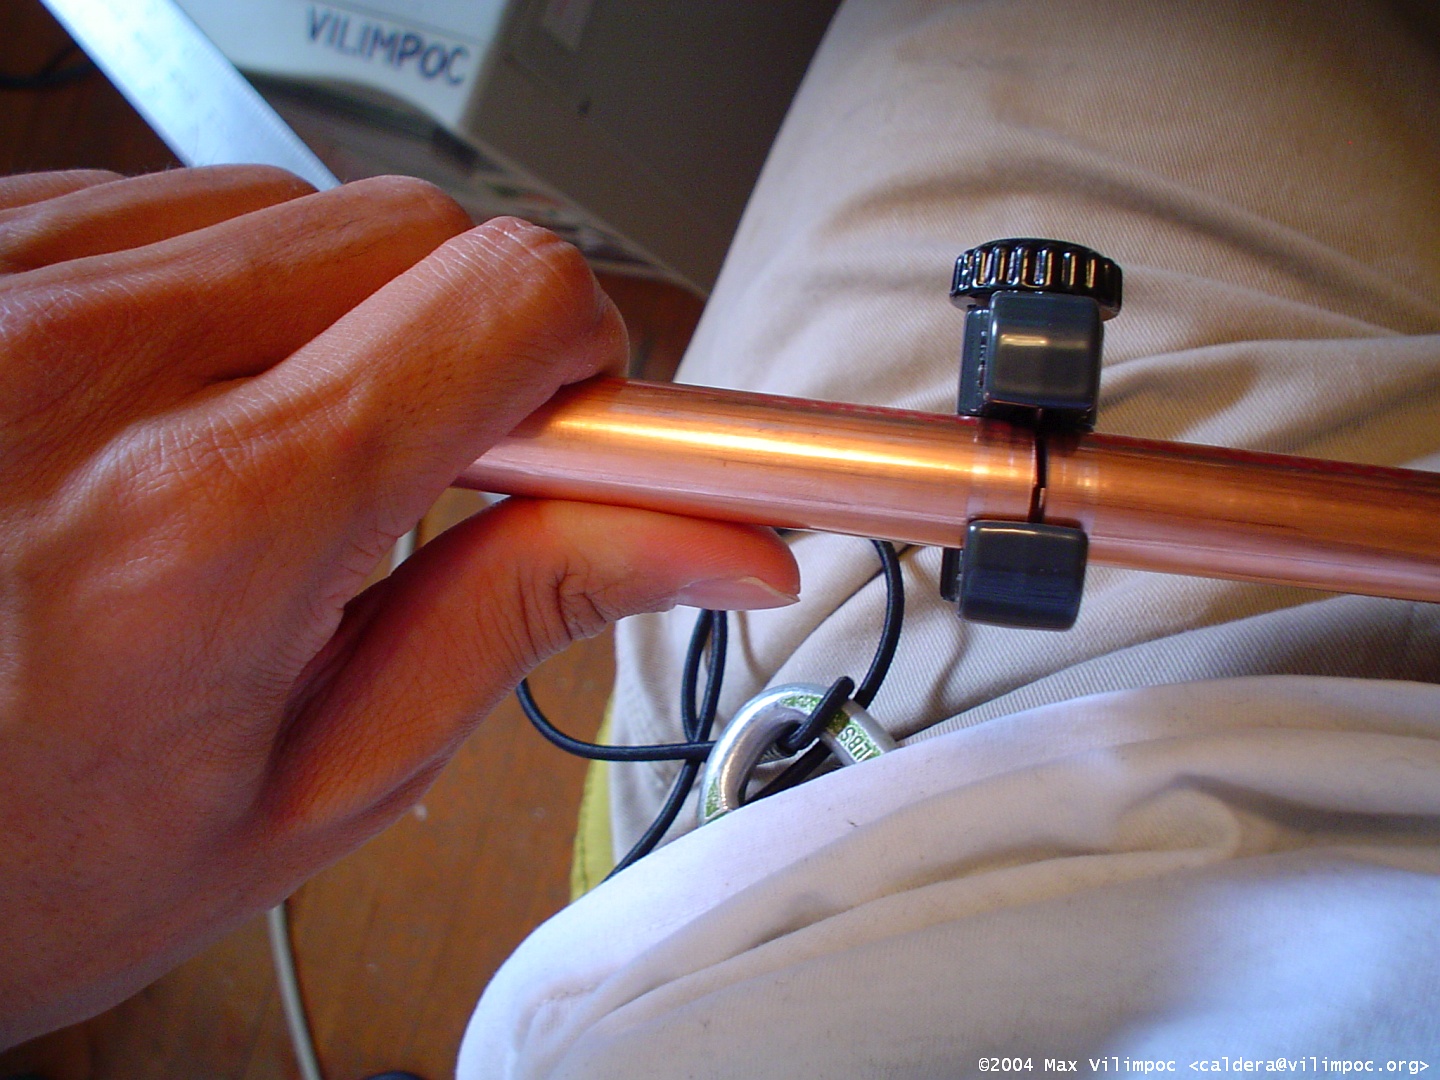 Cutting through the copper pipe using a pipe cutter